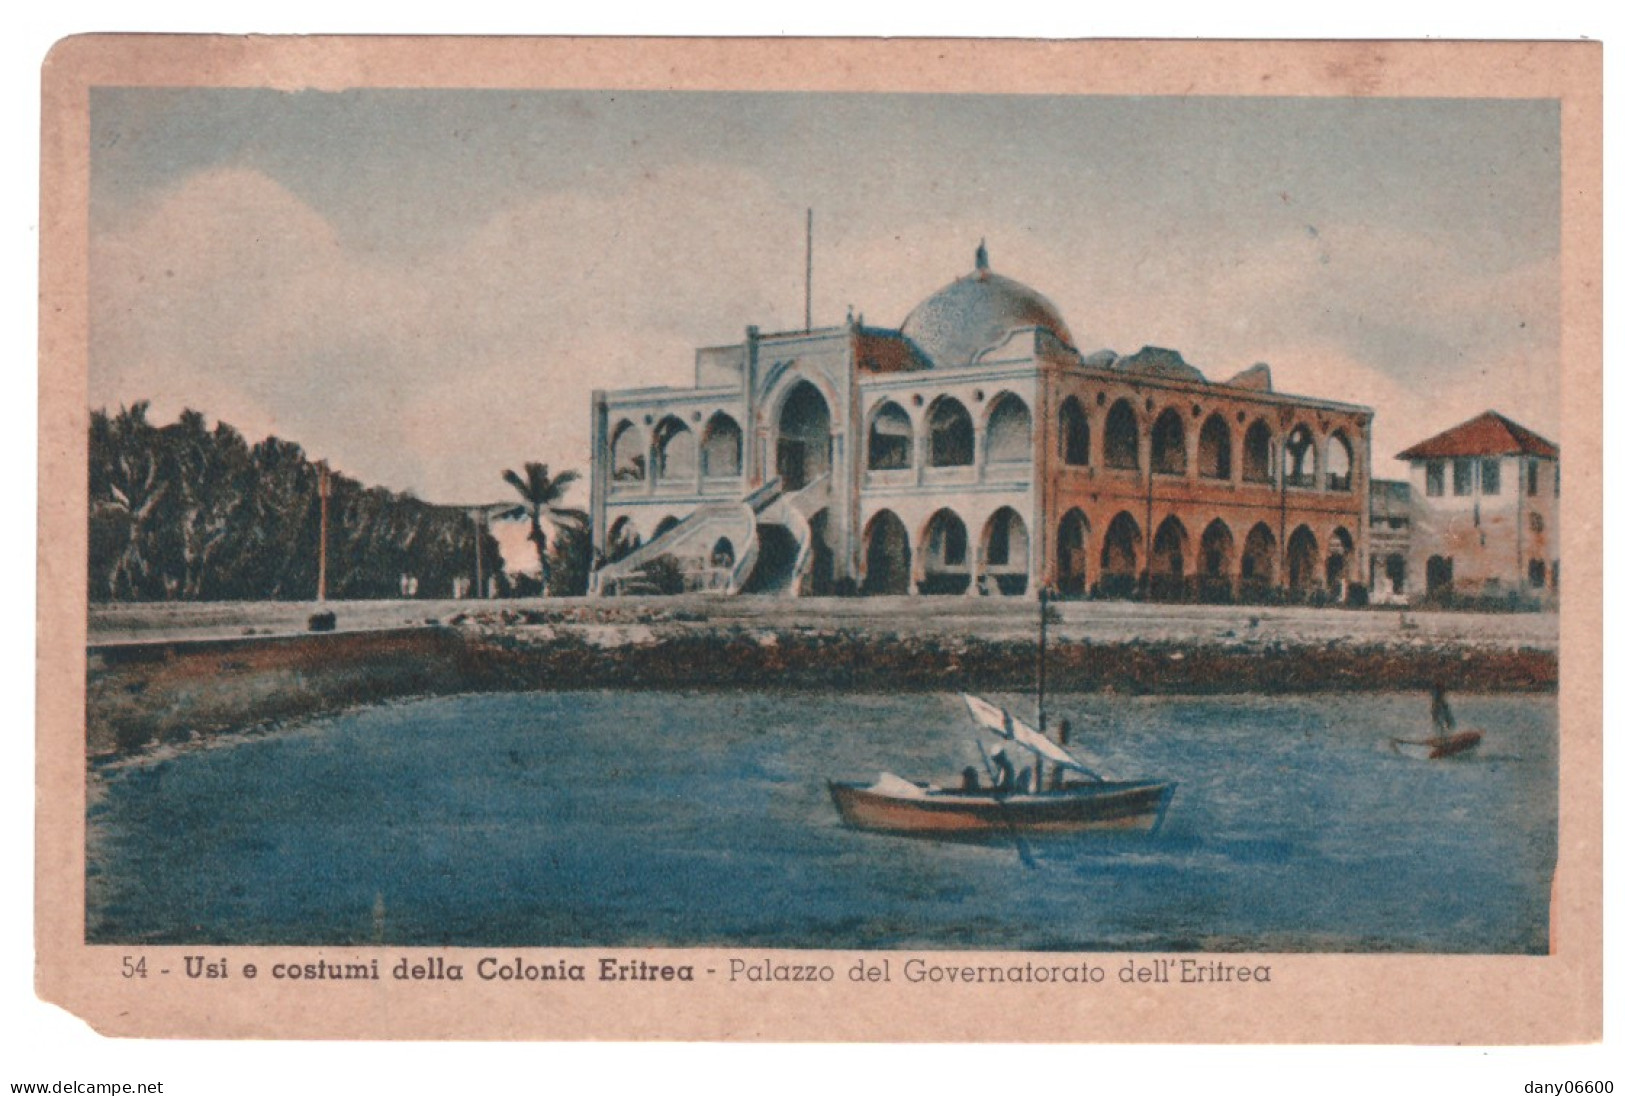 ERYTREE - Usi E Costumi Della Colonia Eritrea - Palazzo Del Governatorato Dell'Eritrea (carte Animée) - Eritrea